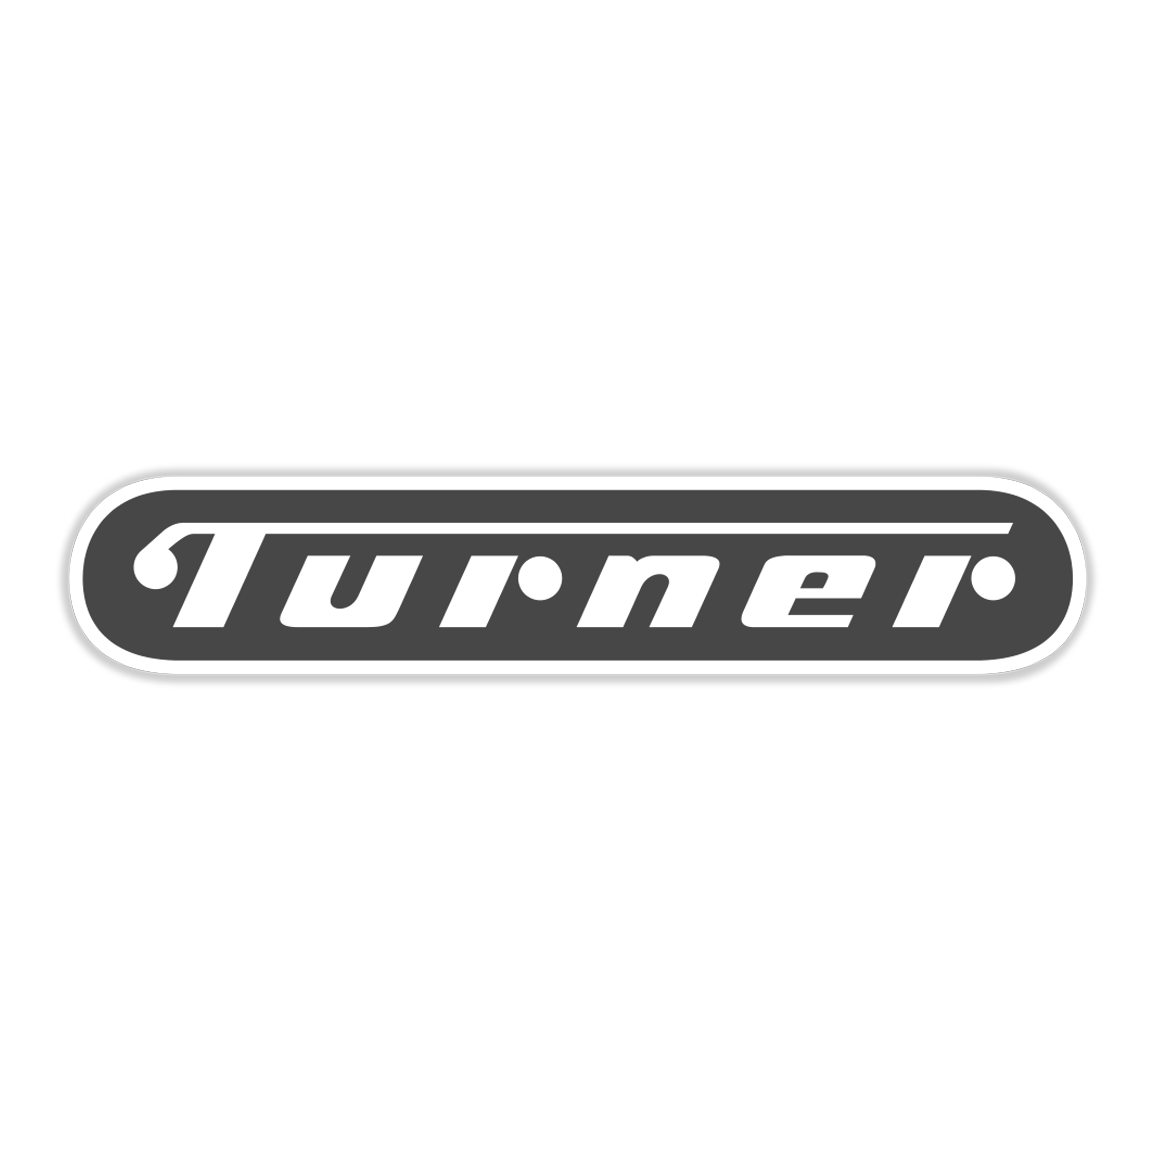 turner-logo BW.png